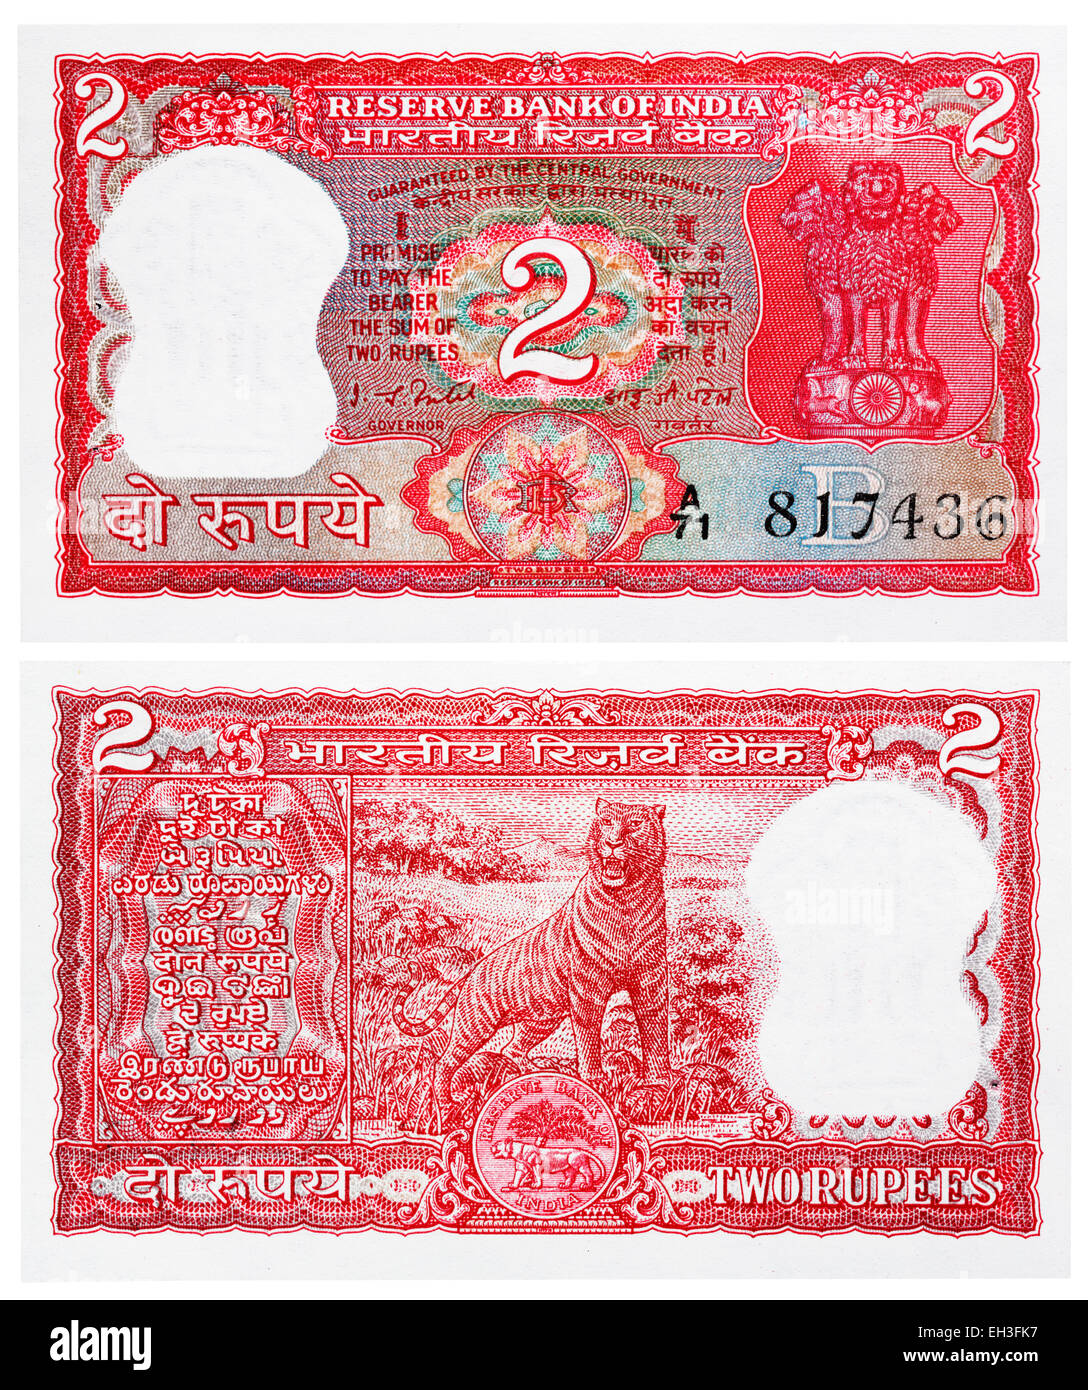 2 rupees banknote, Ashoka column, Bengal tiger, India, 1985 Stock Photo